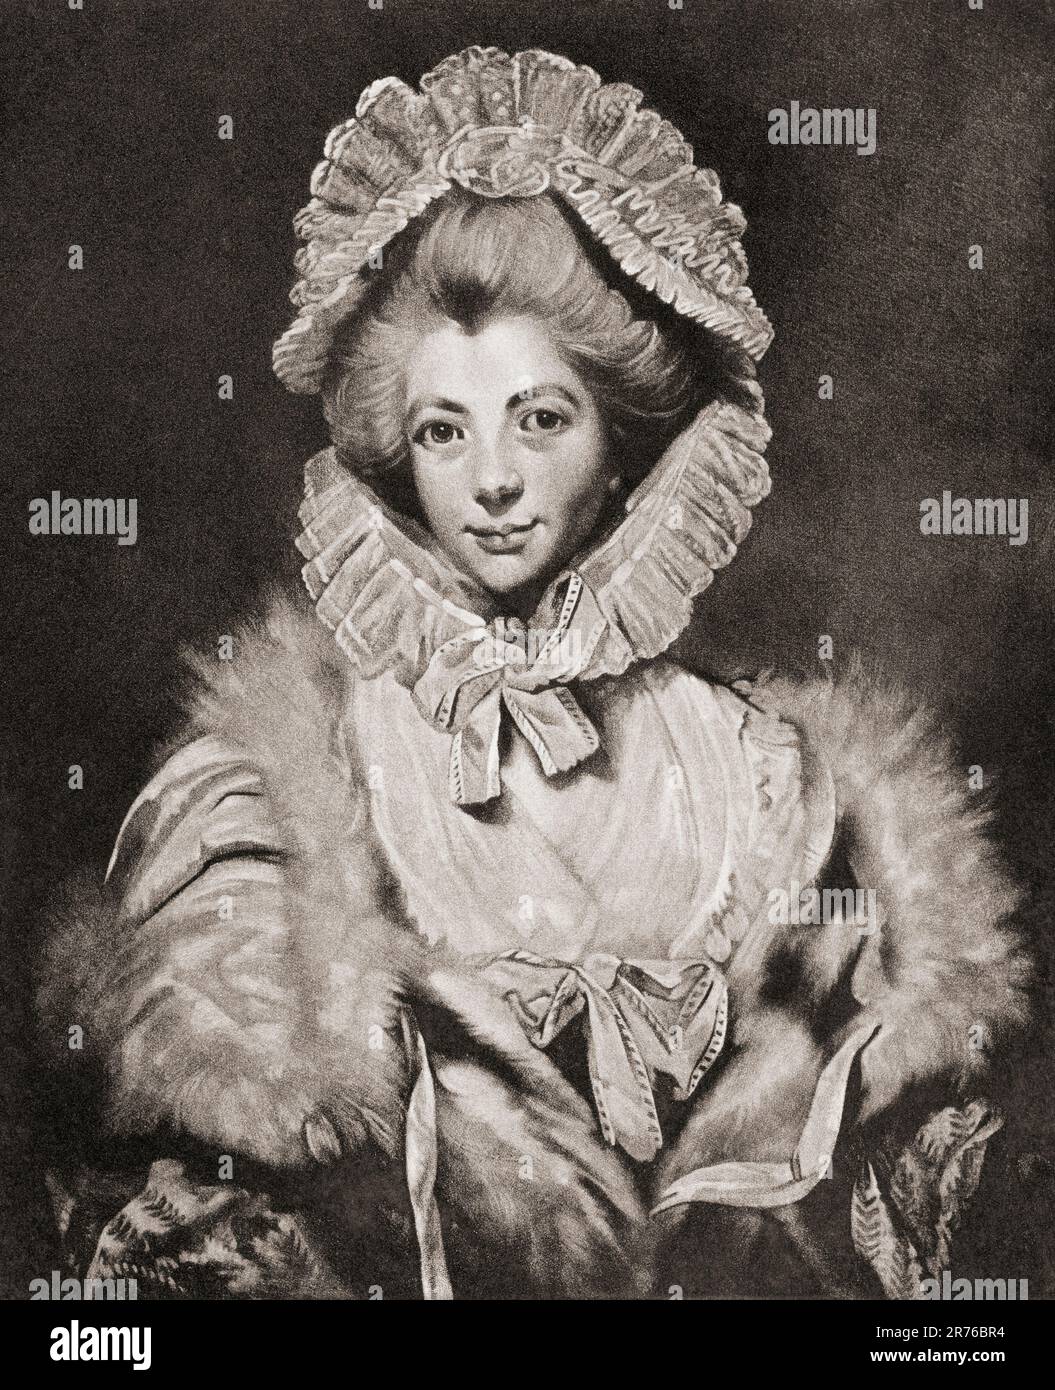 Lavinia Spencer, comtesse Spencer, née Bingham, 1762 – 1831. Illustrateur britannique, épouse de George Spencer, 2nd Earl Spencer. De Mezzotints, publié en 1904. Banque D'Images